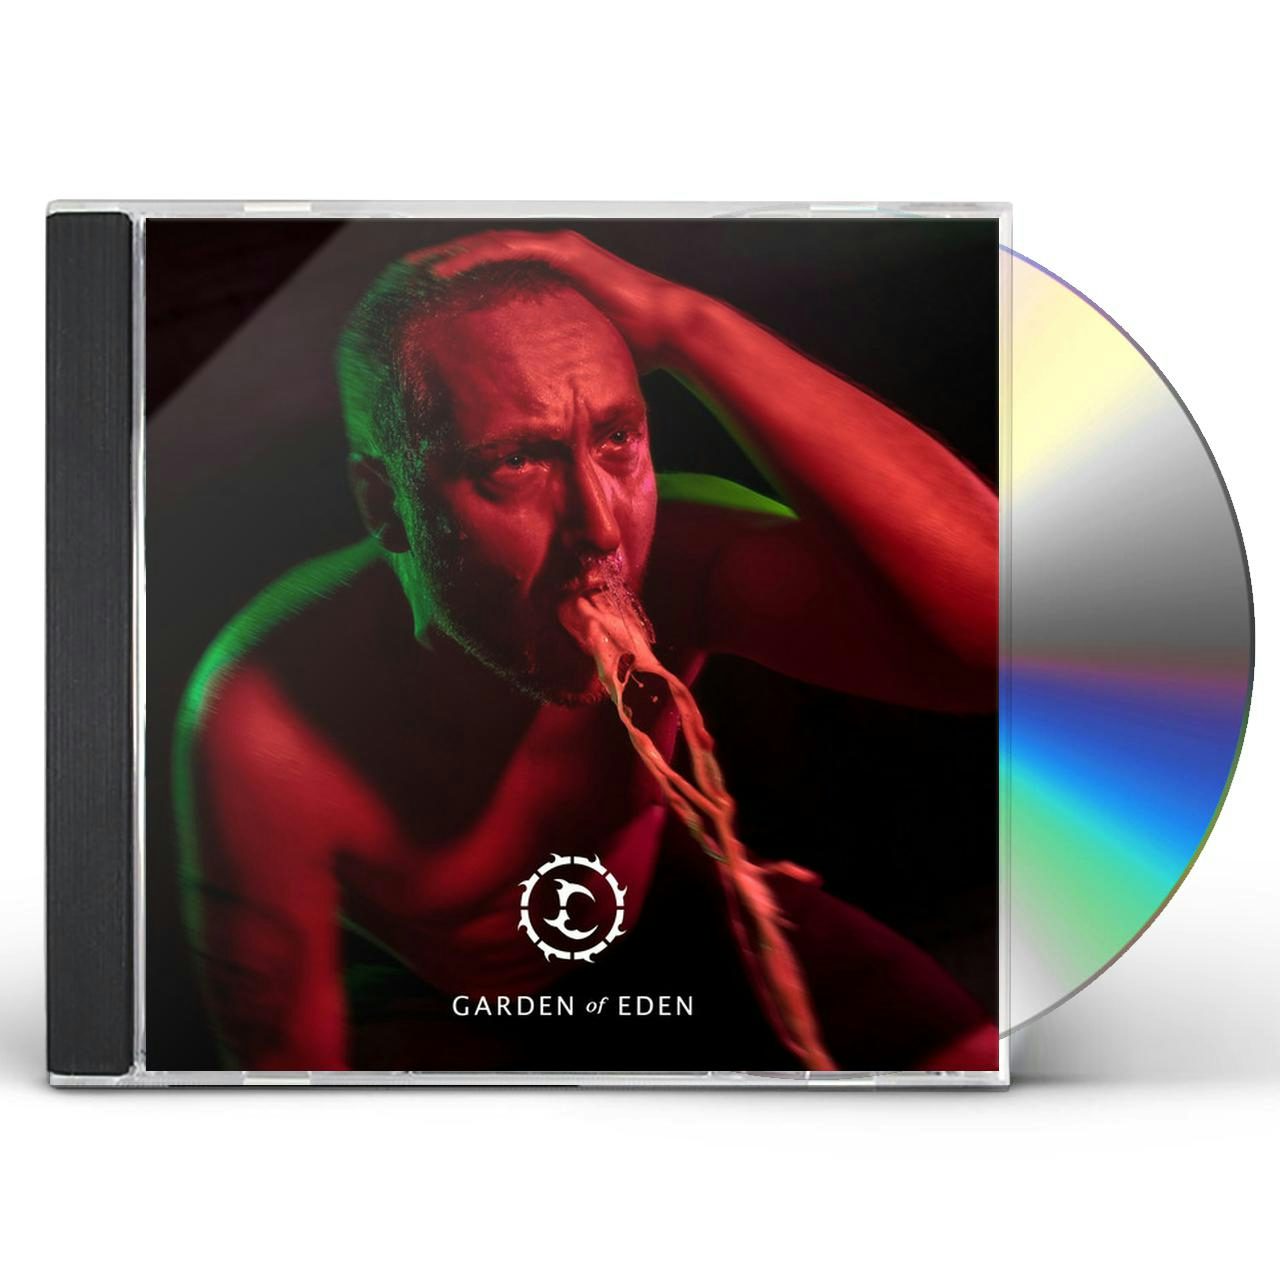 Curimus CD - Artificial Revolution $19.11